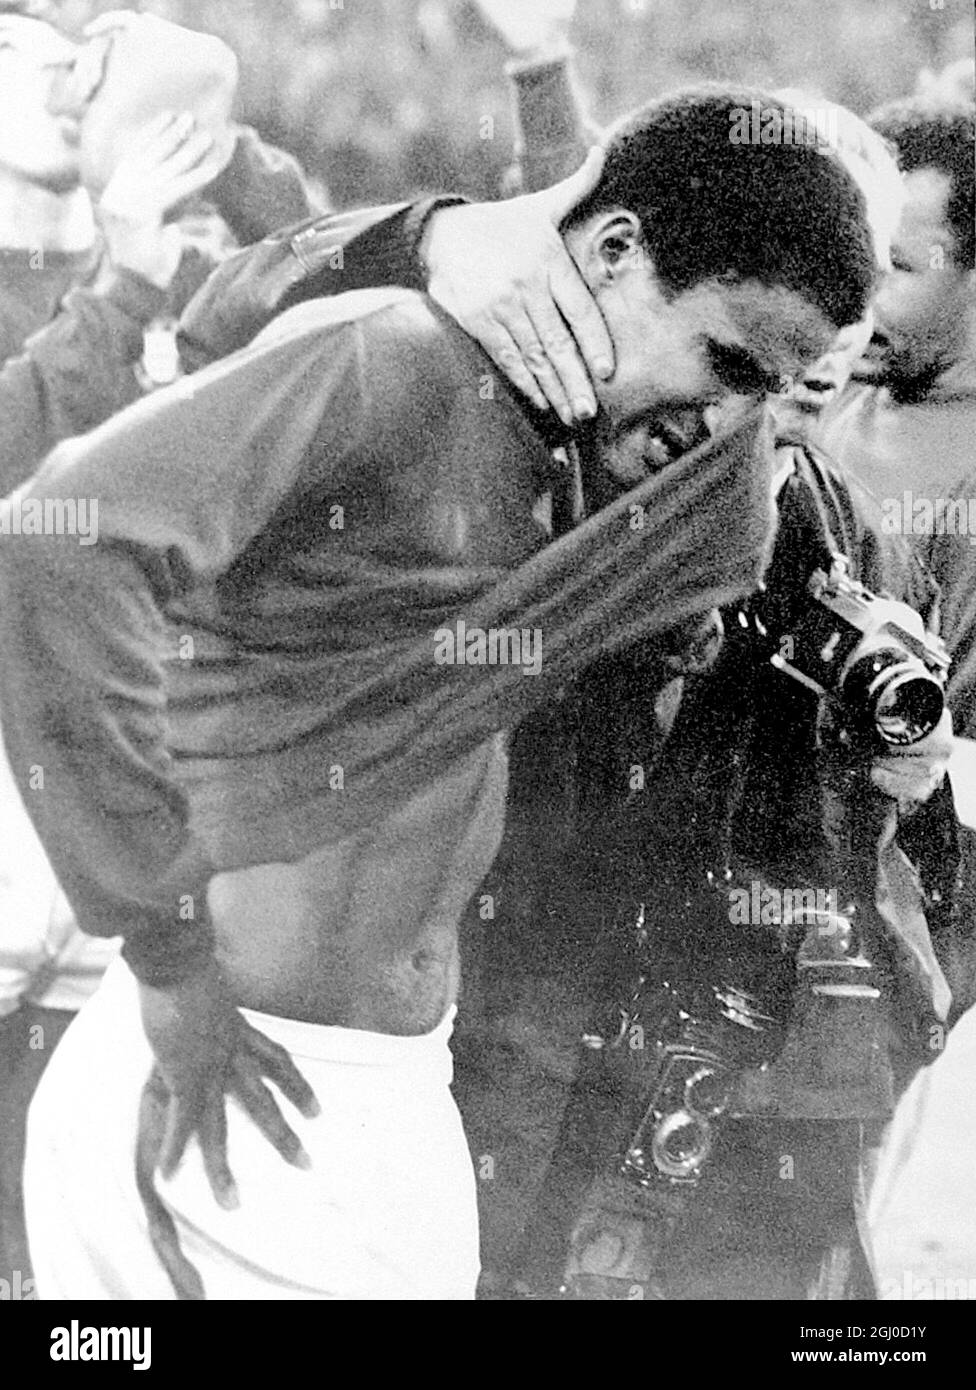 1966 Coppa del mondo Inghilterra / Portogallo Eusebio del Portogallo si svetta mentre esce dal campo dopo che l'Inghilterra ha battuto il Portogallo 2-1 nella partita semi-finale della Coppa del mondo a Wembley. 26 luglio 1966 Foto Stock